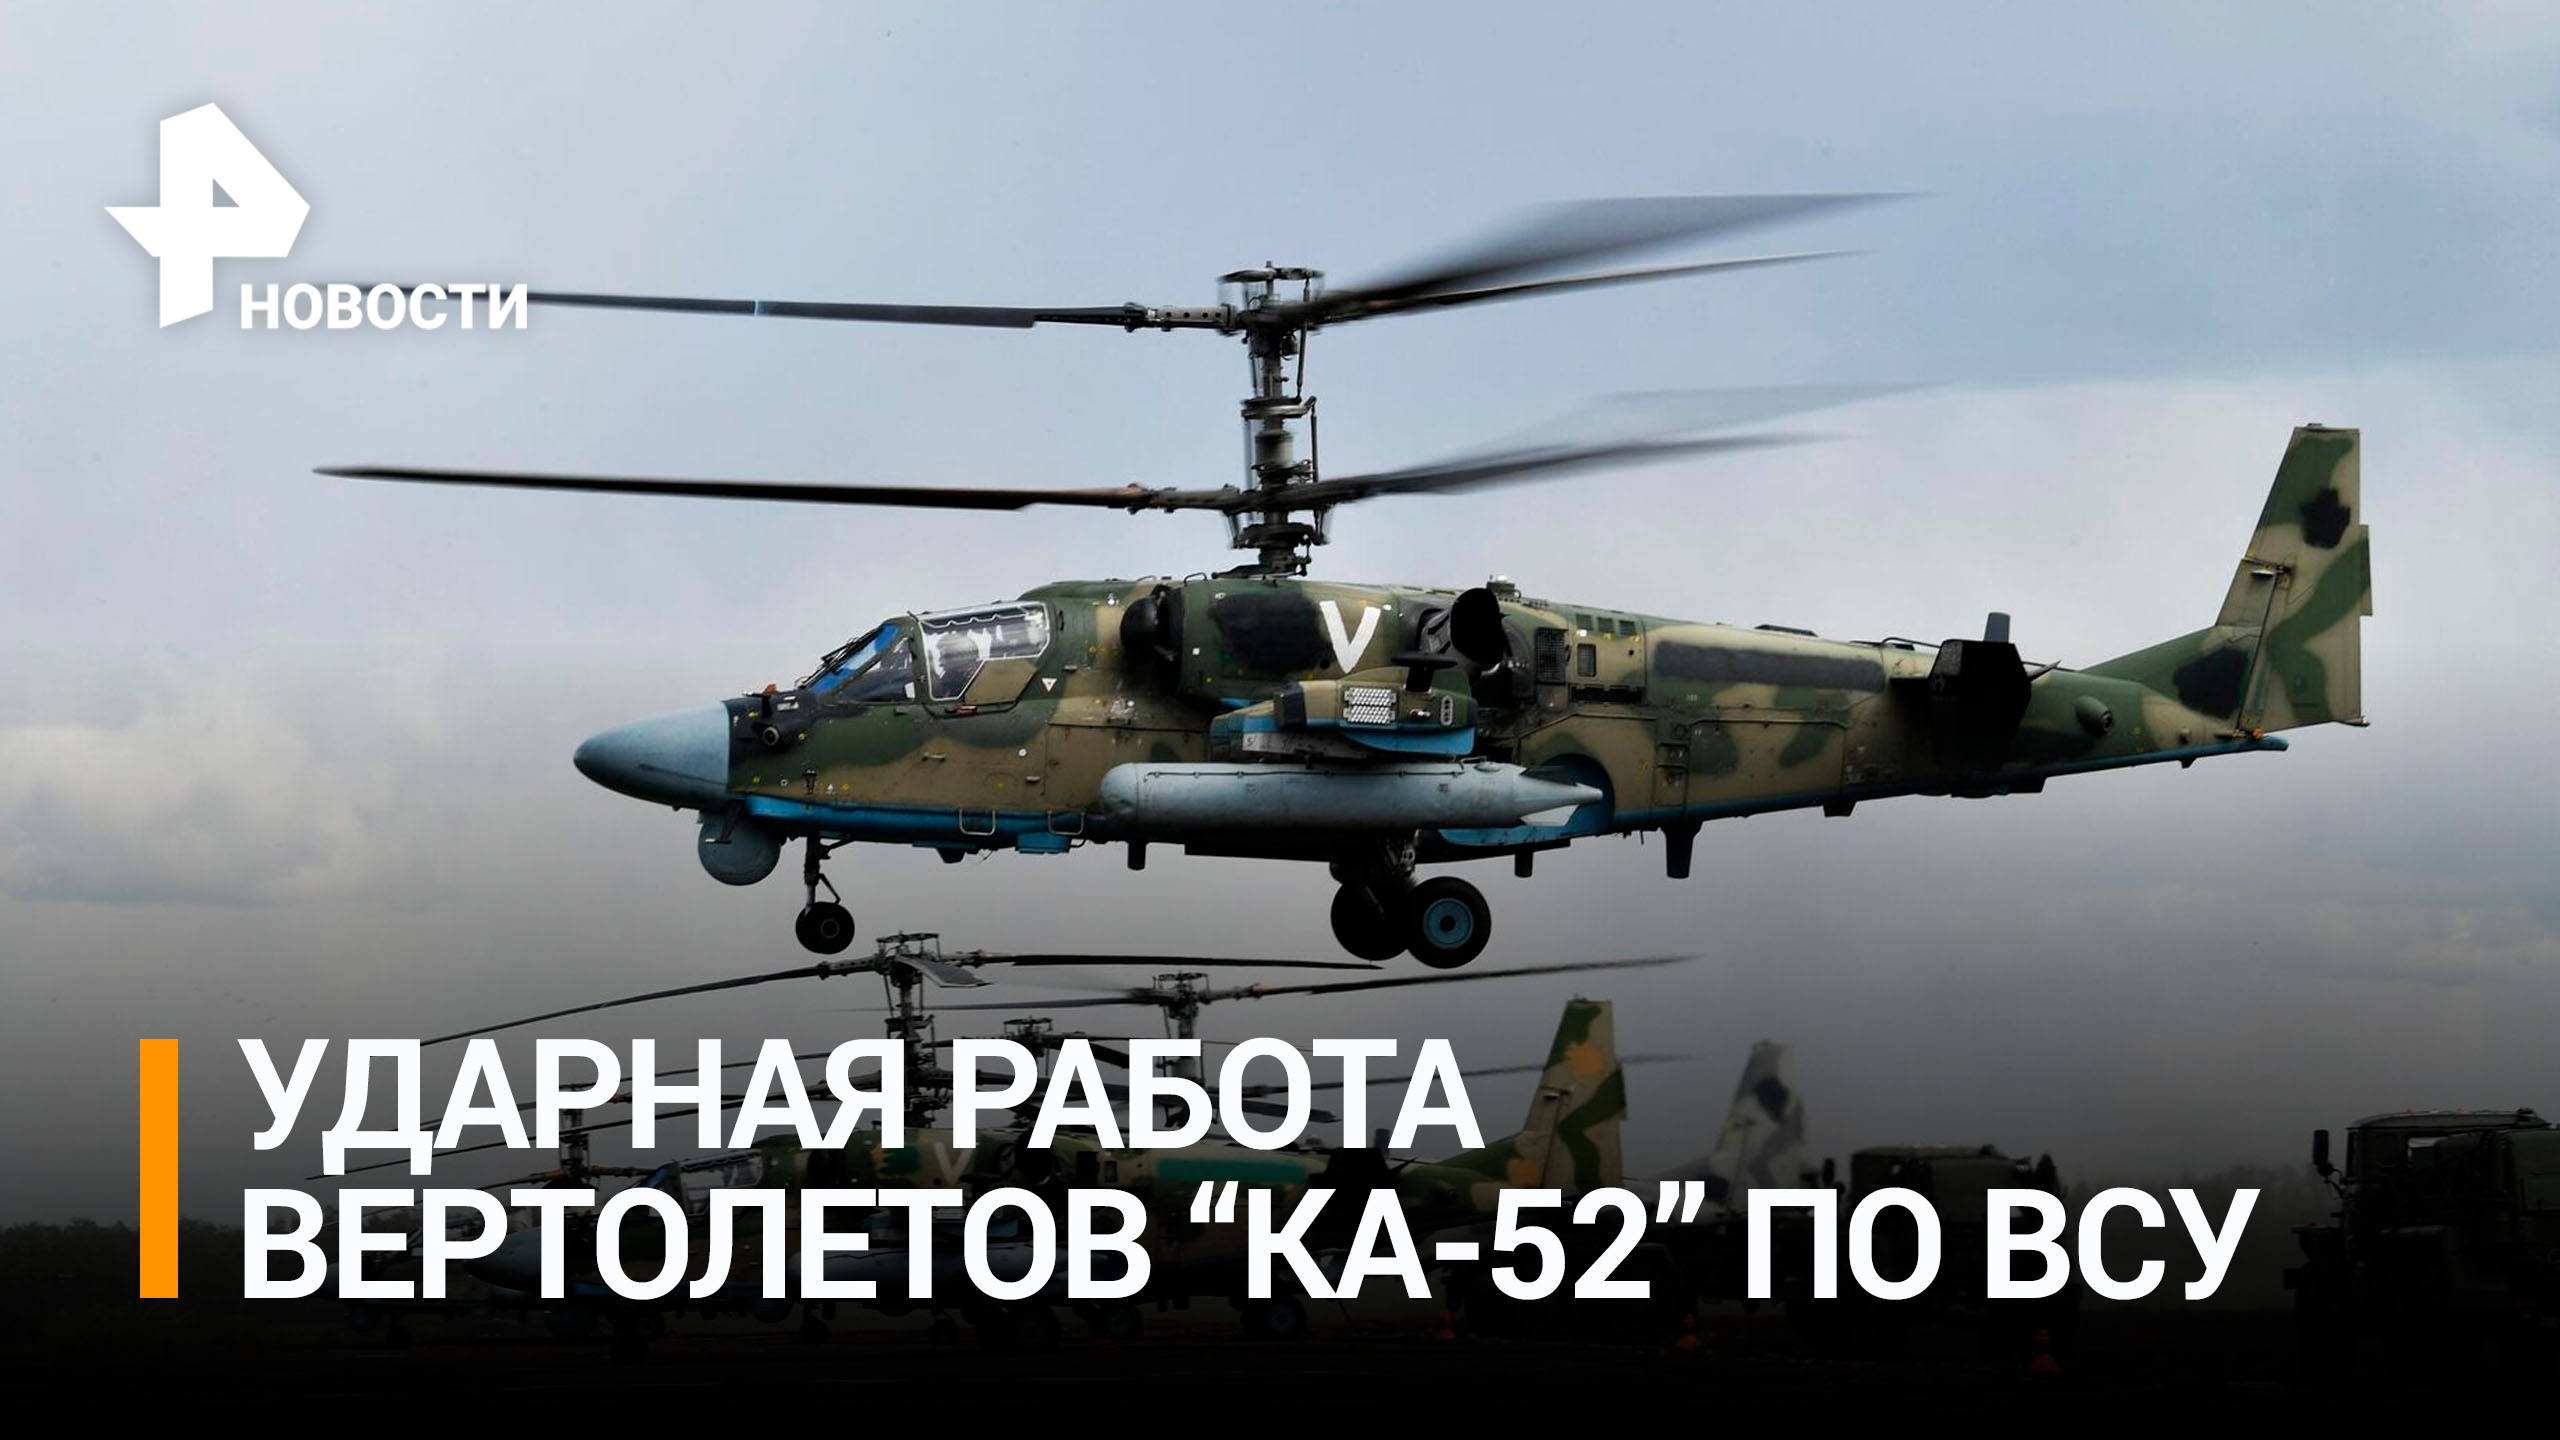 Вертолеты России Ка-52 уничтожили украинский пункт управления / РЕН Новости